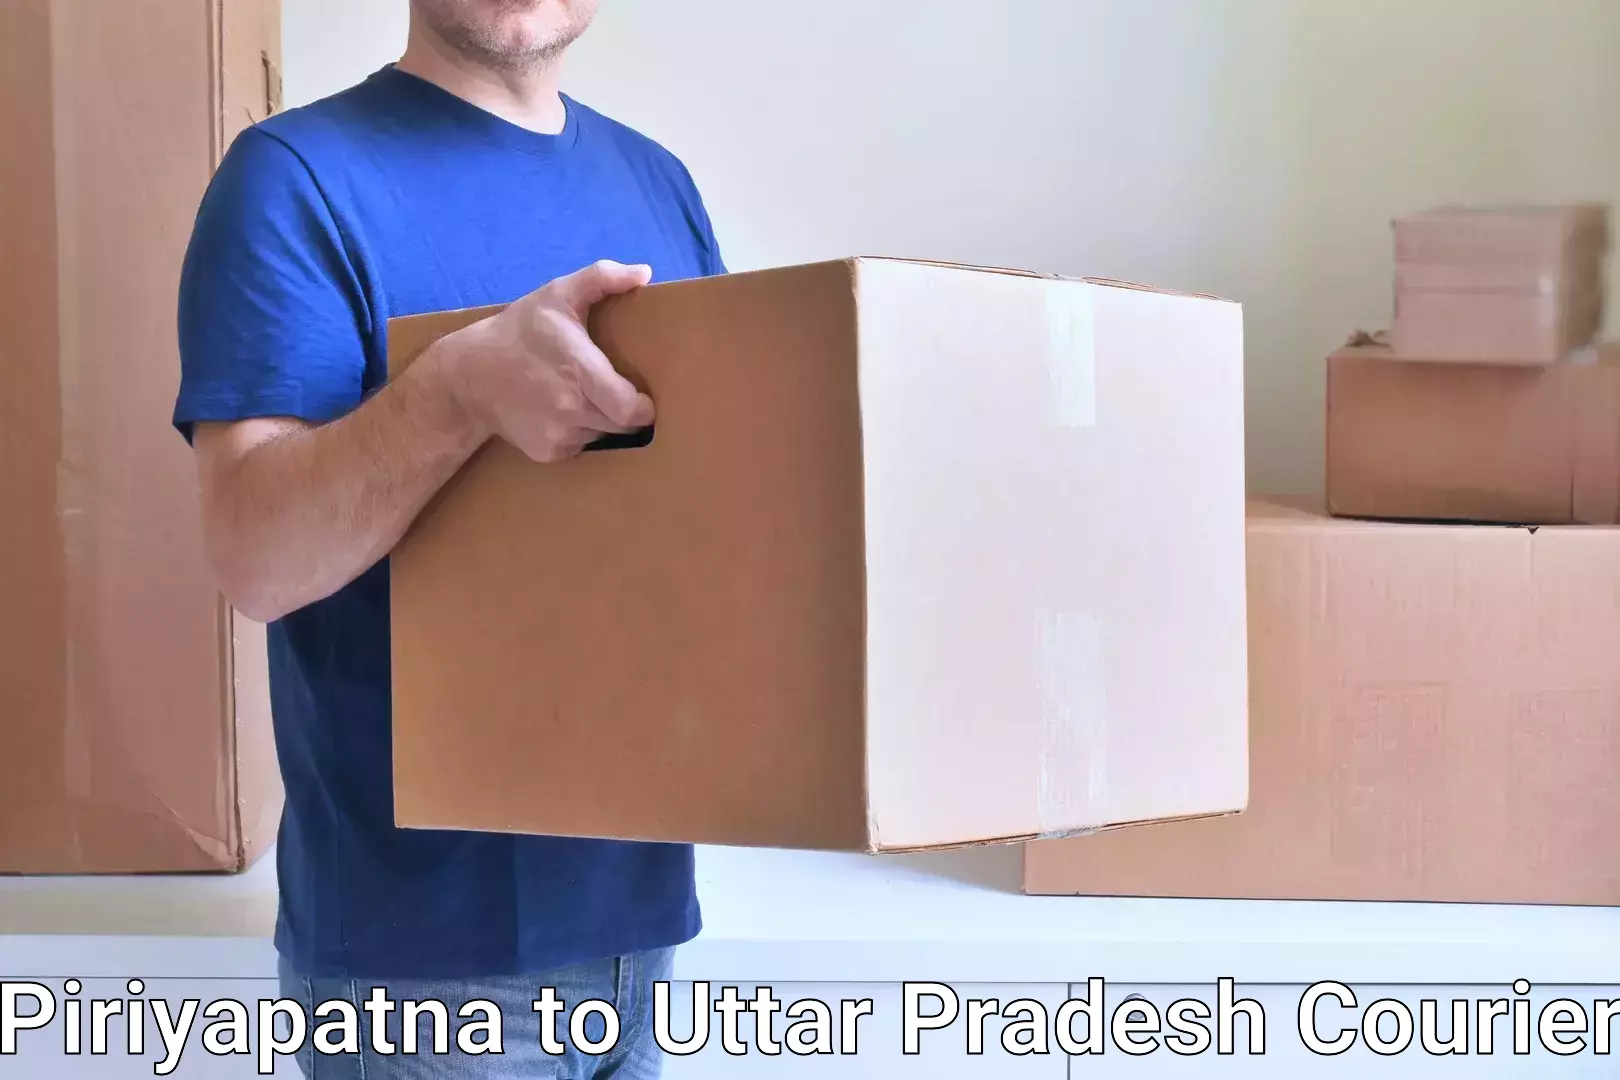 Express courier capabilities Piriyapatna to Sahatwar